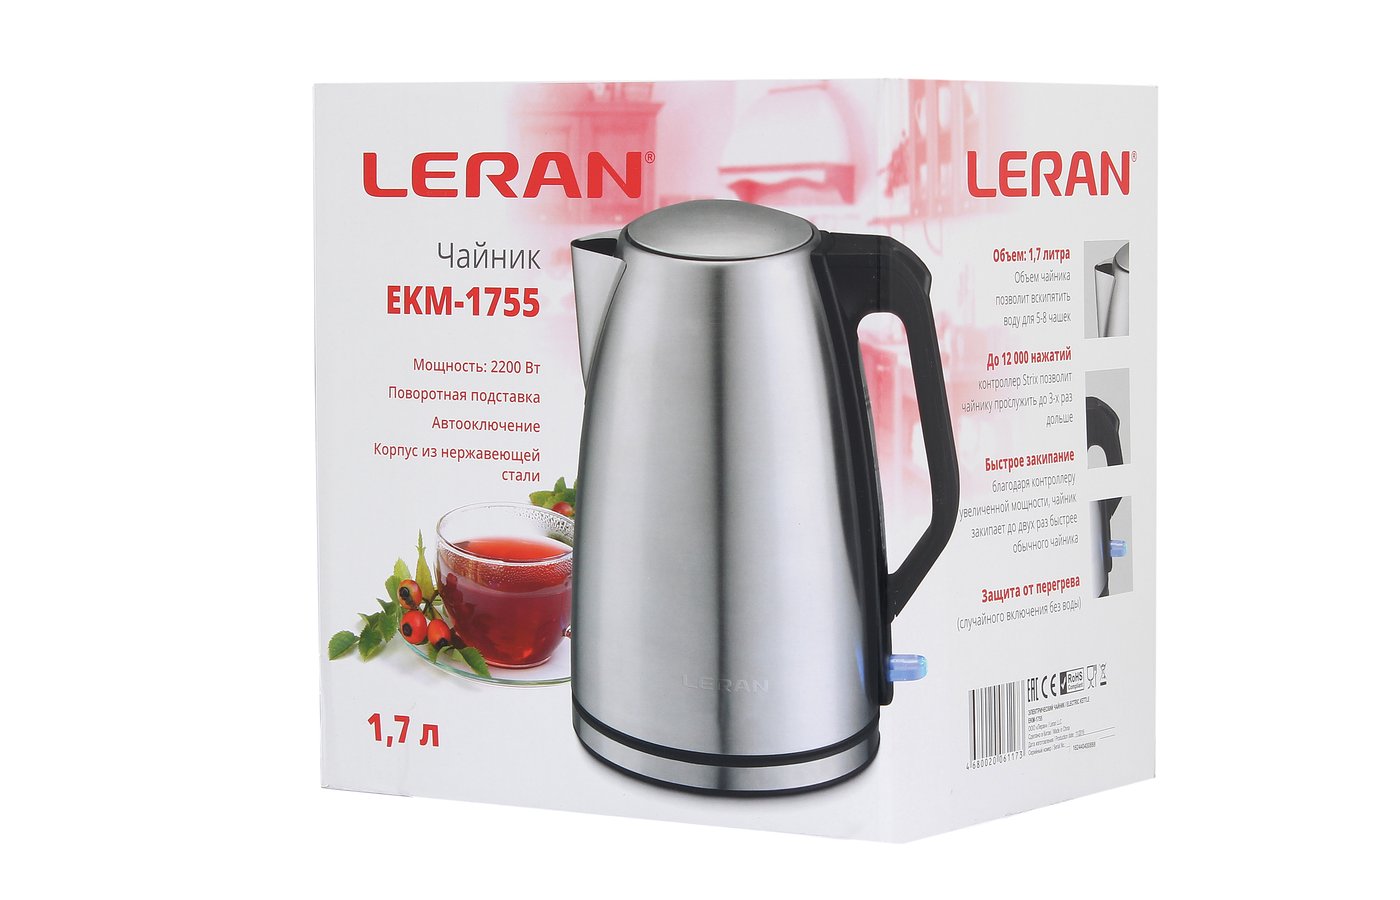 Страна производитель техники леран. Чайник электрический Леран. Чайник Leran Ekm-1755. Leran чайник Ekm. Электрический чайник ECON Eco-1881ke,.